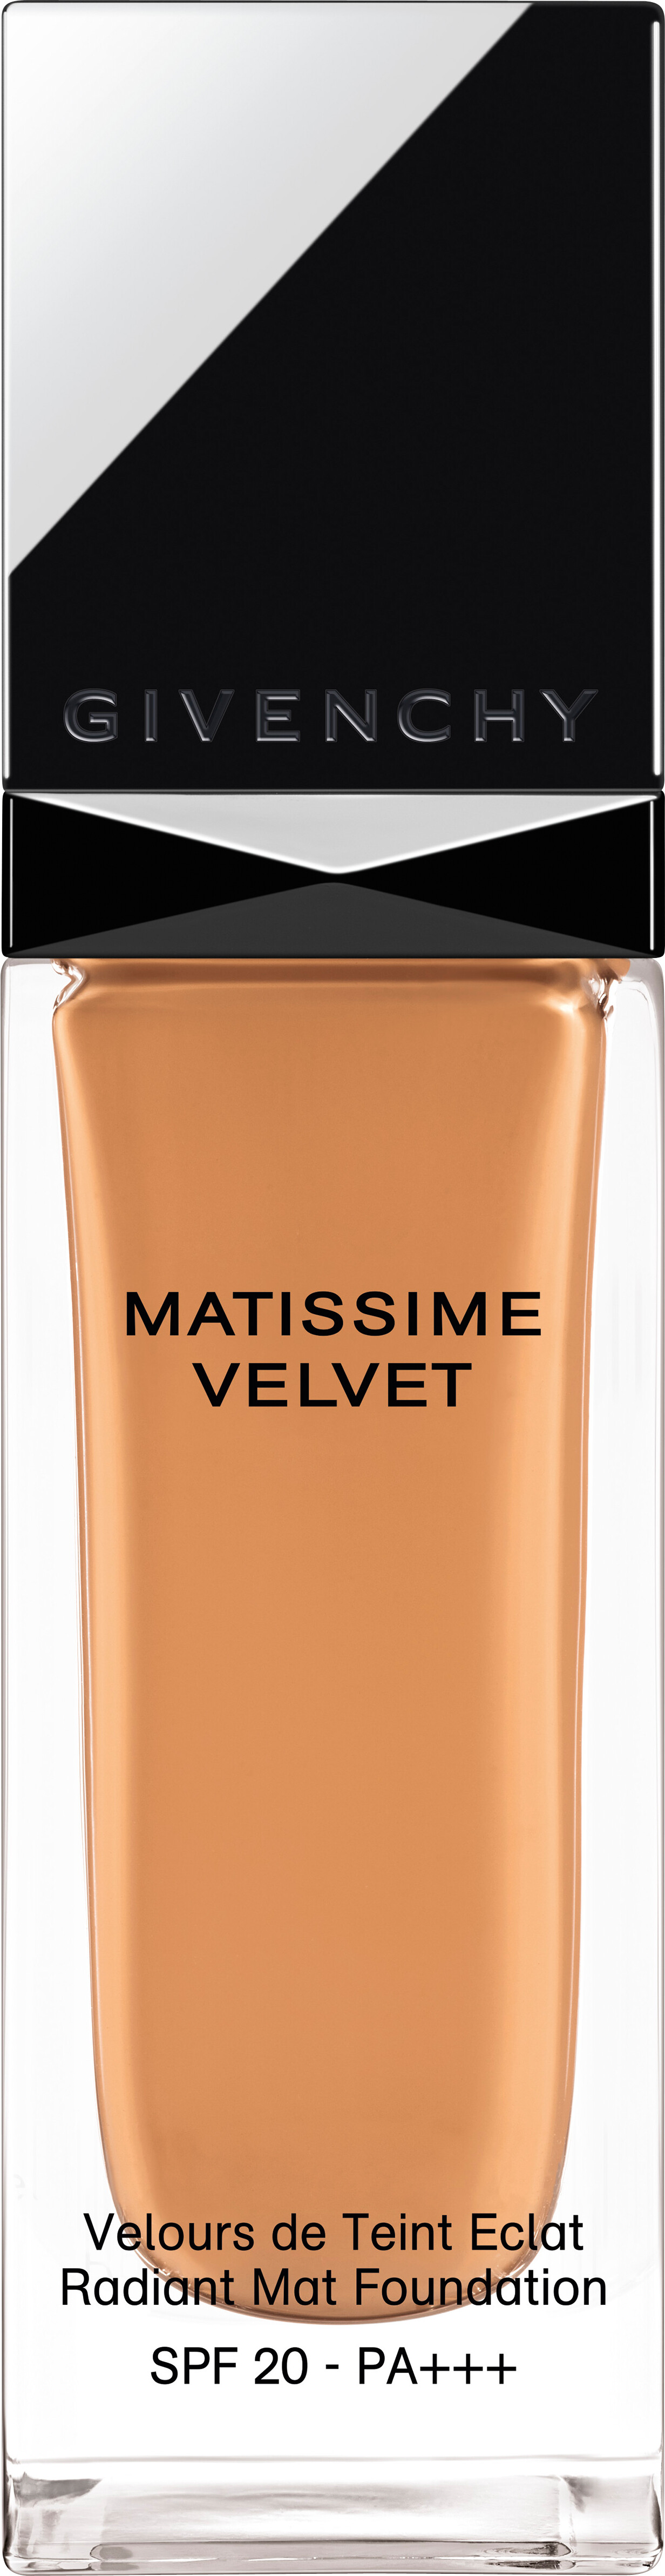 GIVENCHY Matissime Velvet Fluid Foundation SPF20 30ml 07 - Mat Ginger